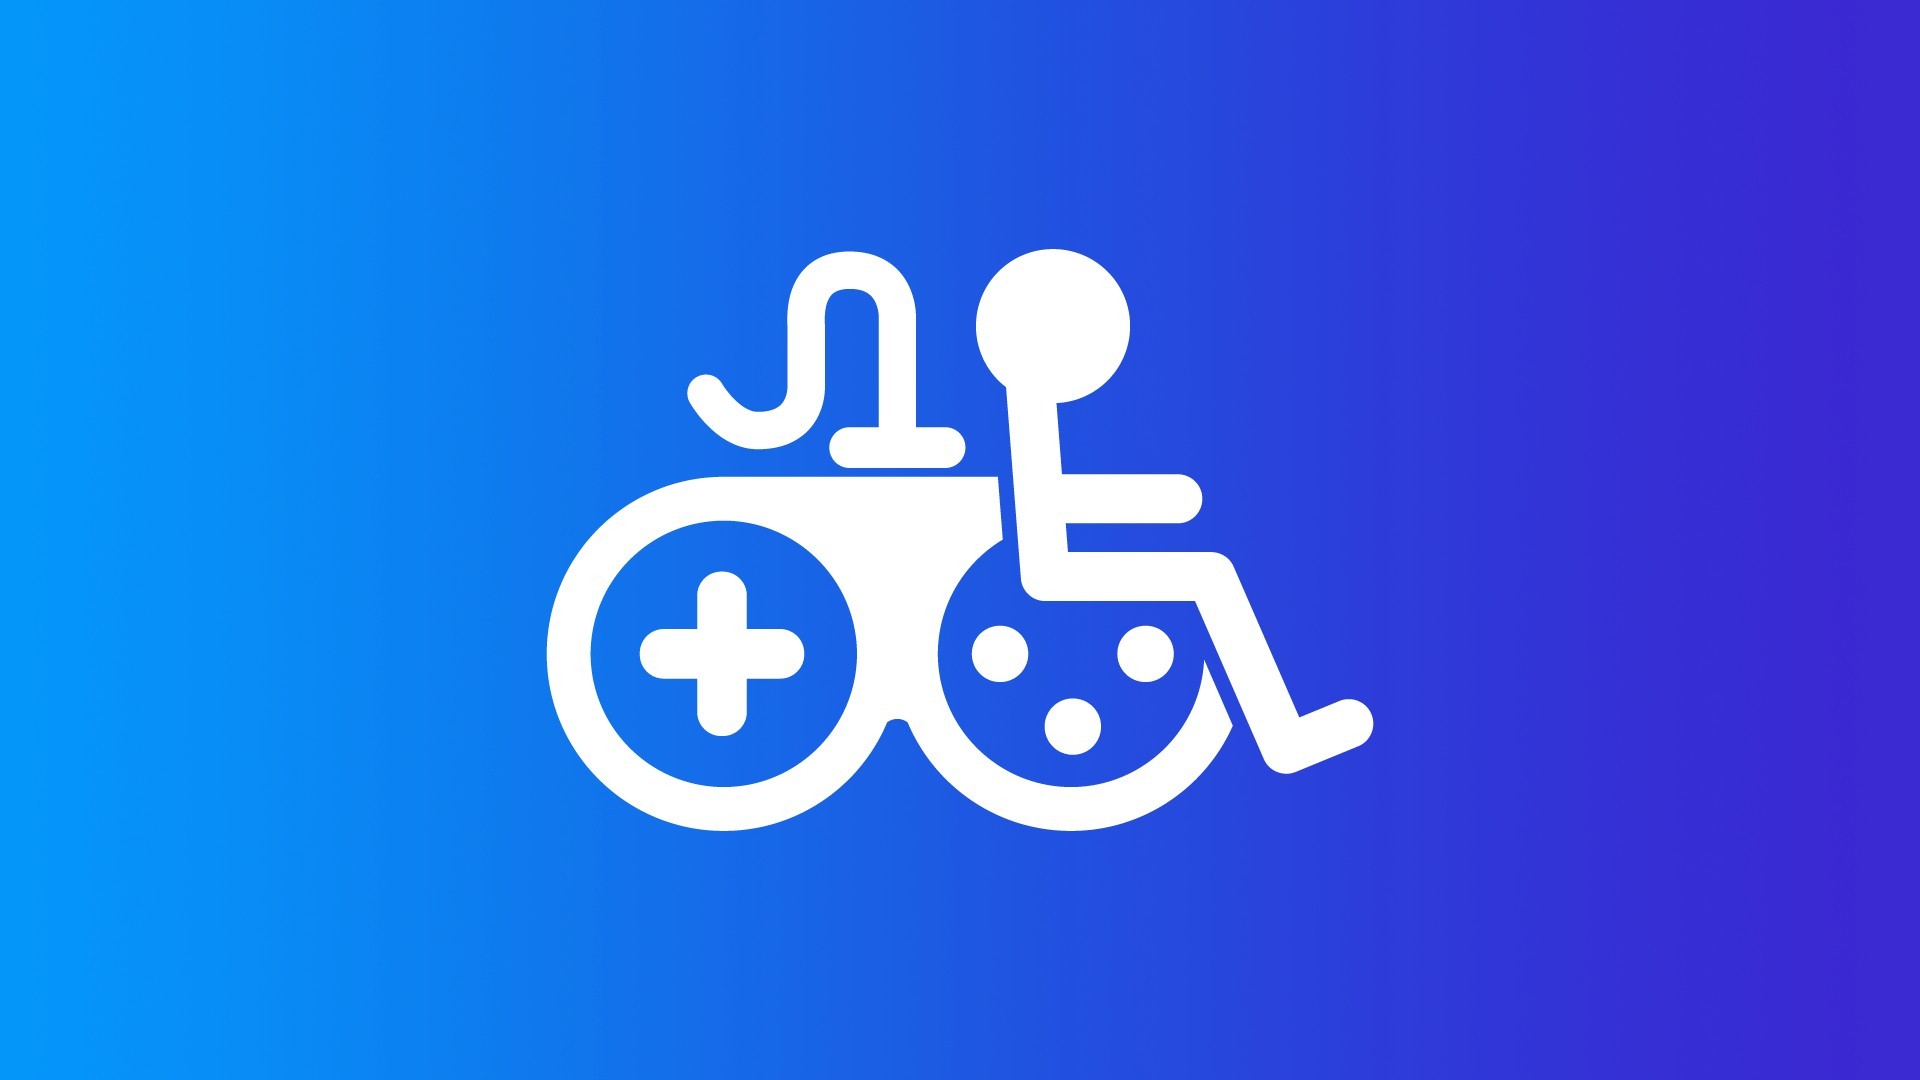 Das Symbol für die Barrierefreiheit im Spiel, das das Symbol für eine Behinderung in Verbindung mit einem Spiel-Controller darstellt.